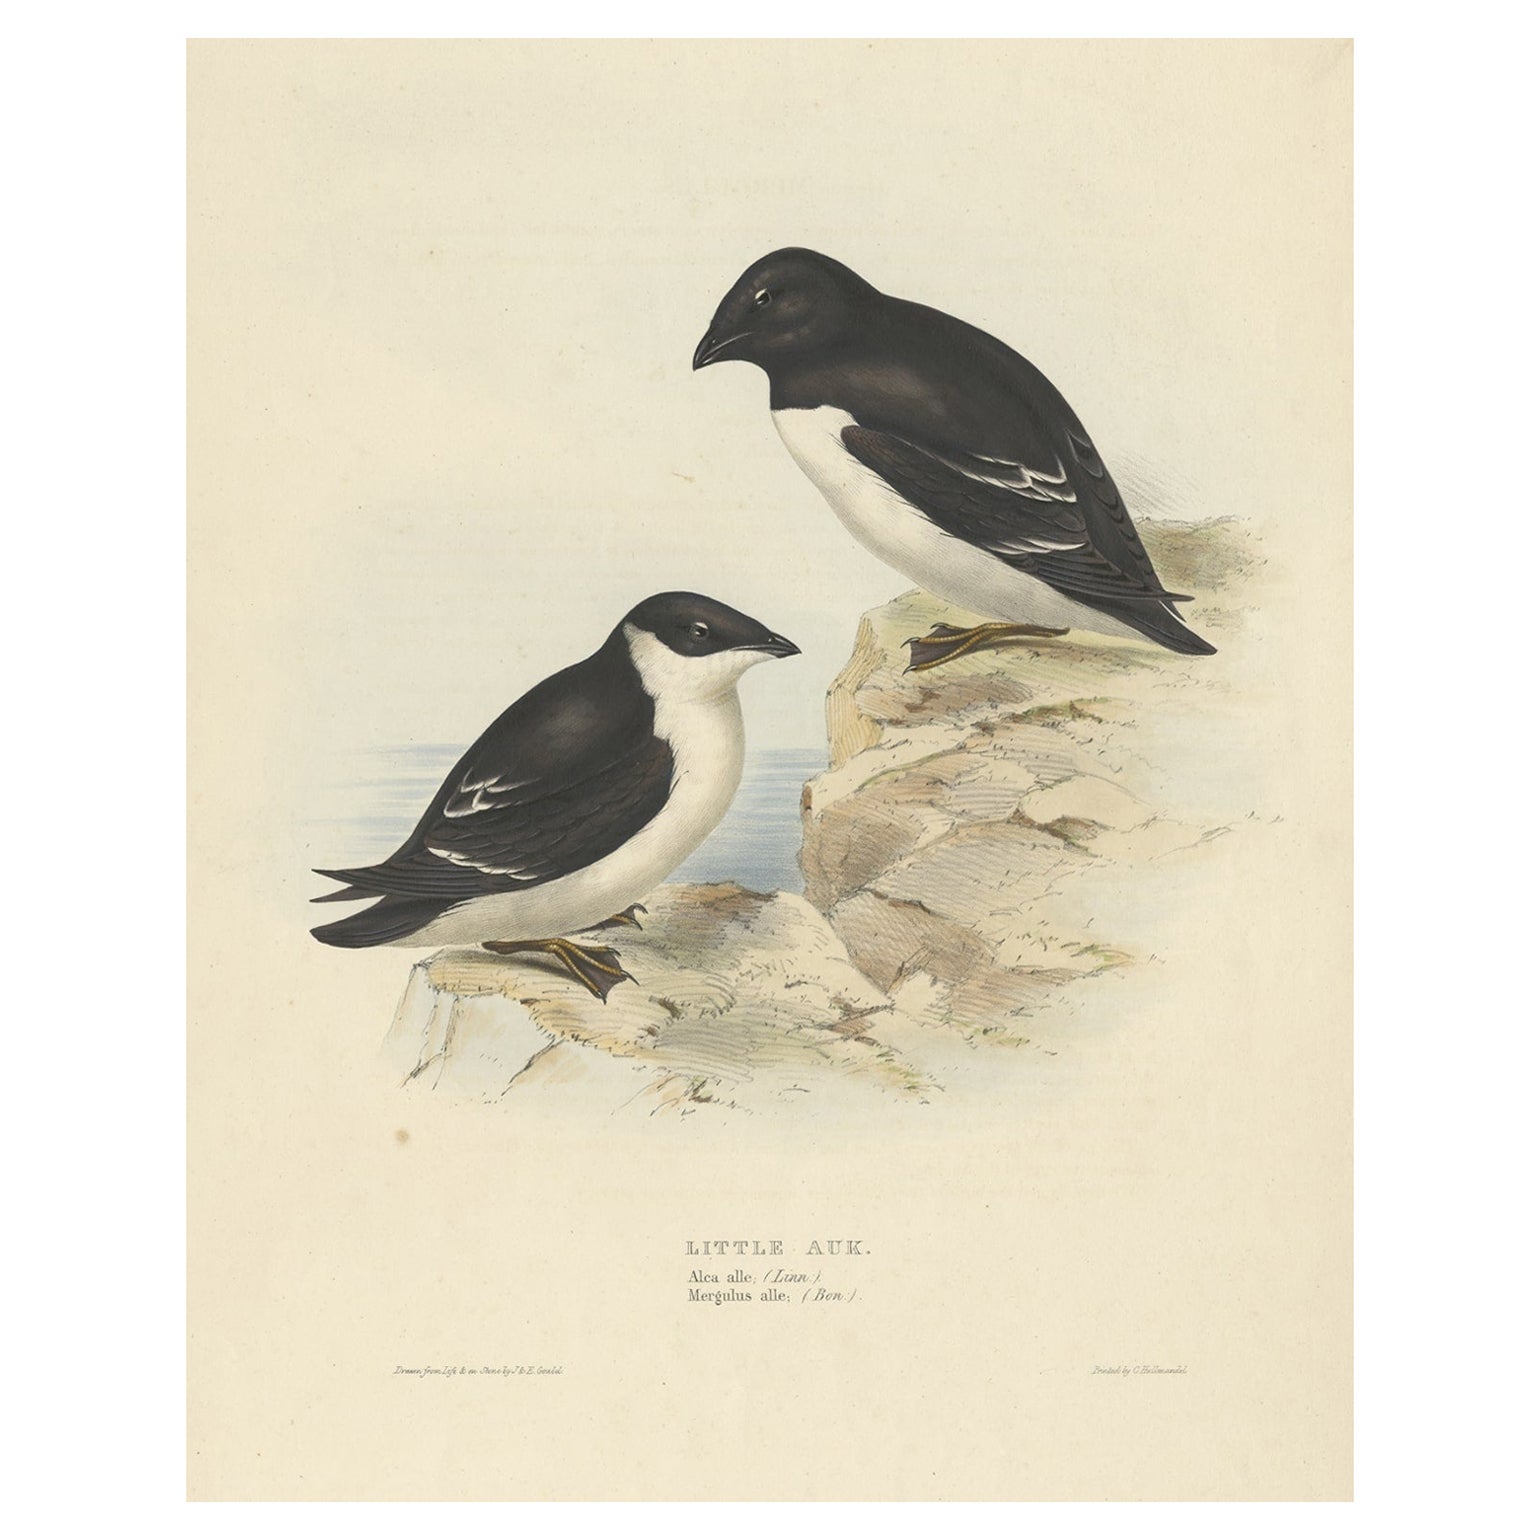 Ancienne estampe d'oiseau représentant le petit Auk par Gould, 1832